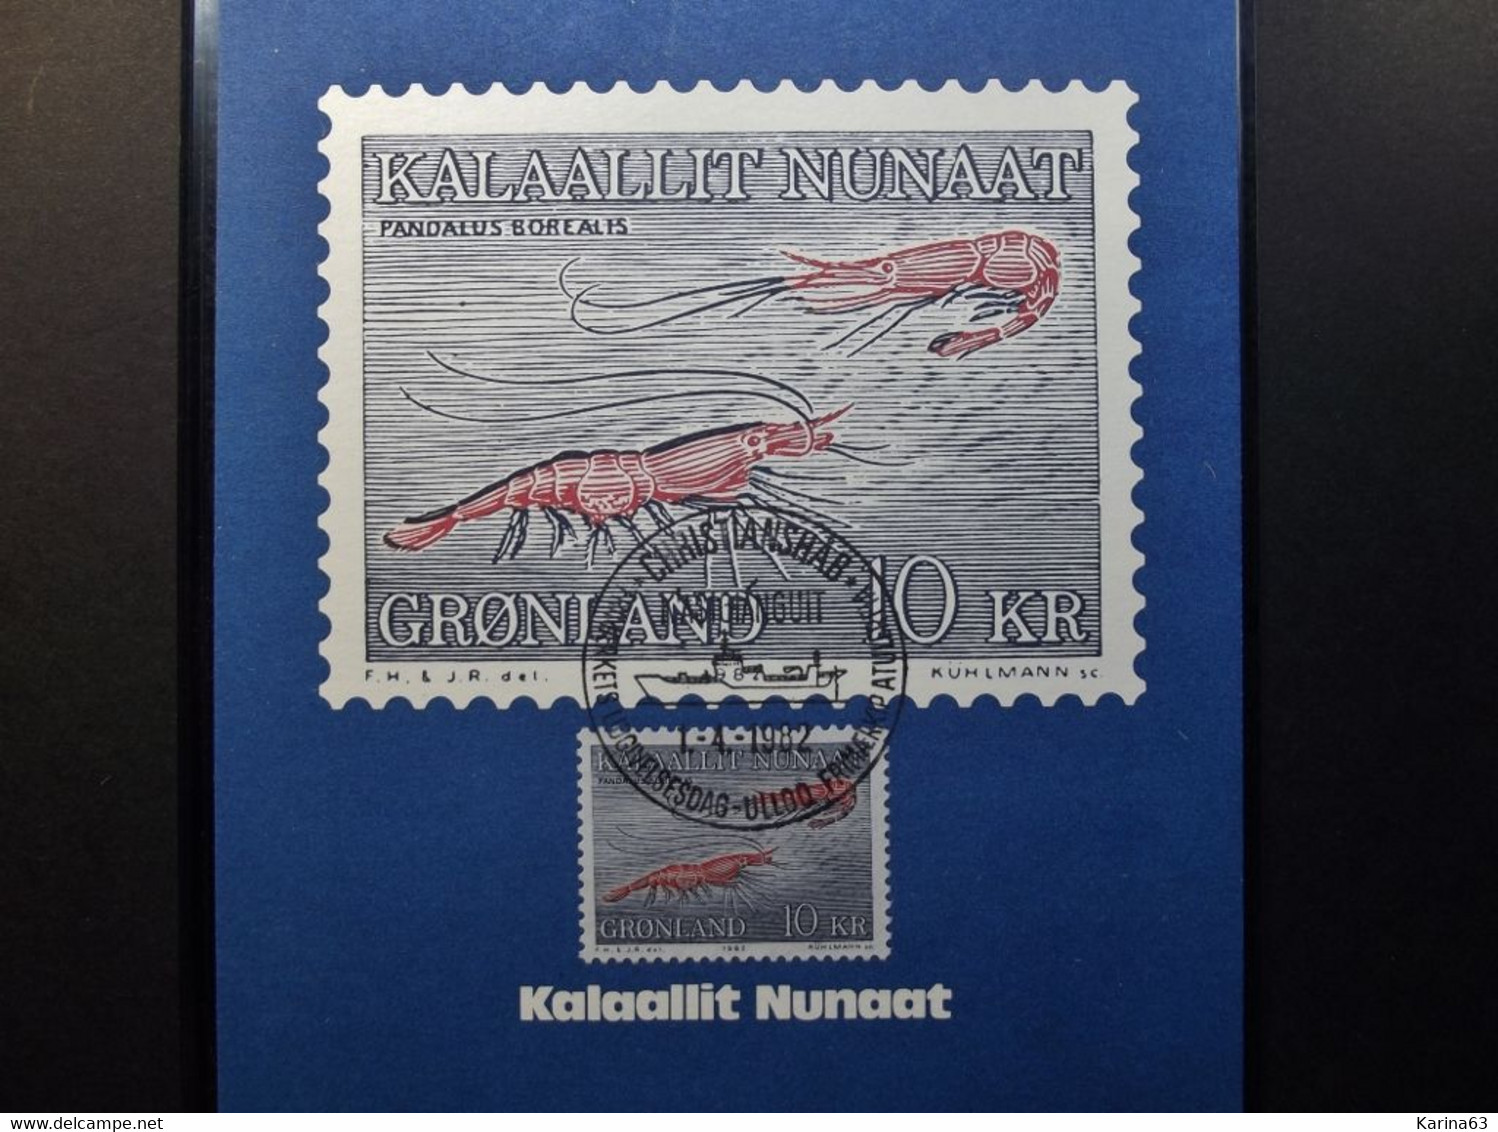 Greenland - Gronland  - 1982 -  Mi 133 Maximum Maxima Card - Fish Shrimp  - Pandalus Borealis - 1 April 1982 - Cartoline Maximum